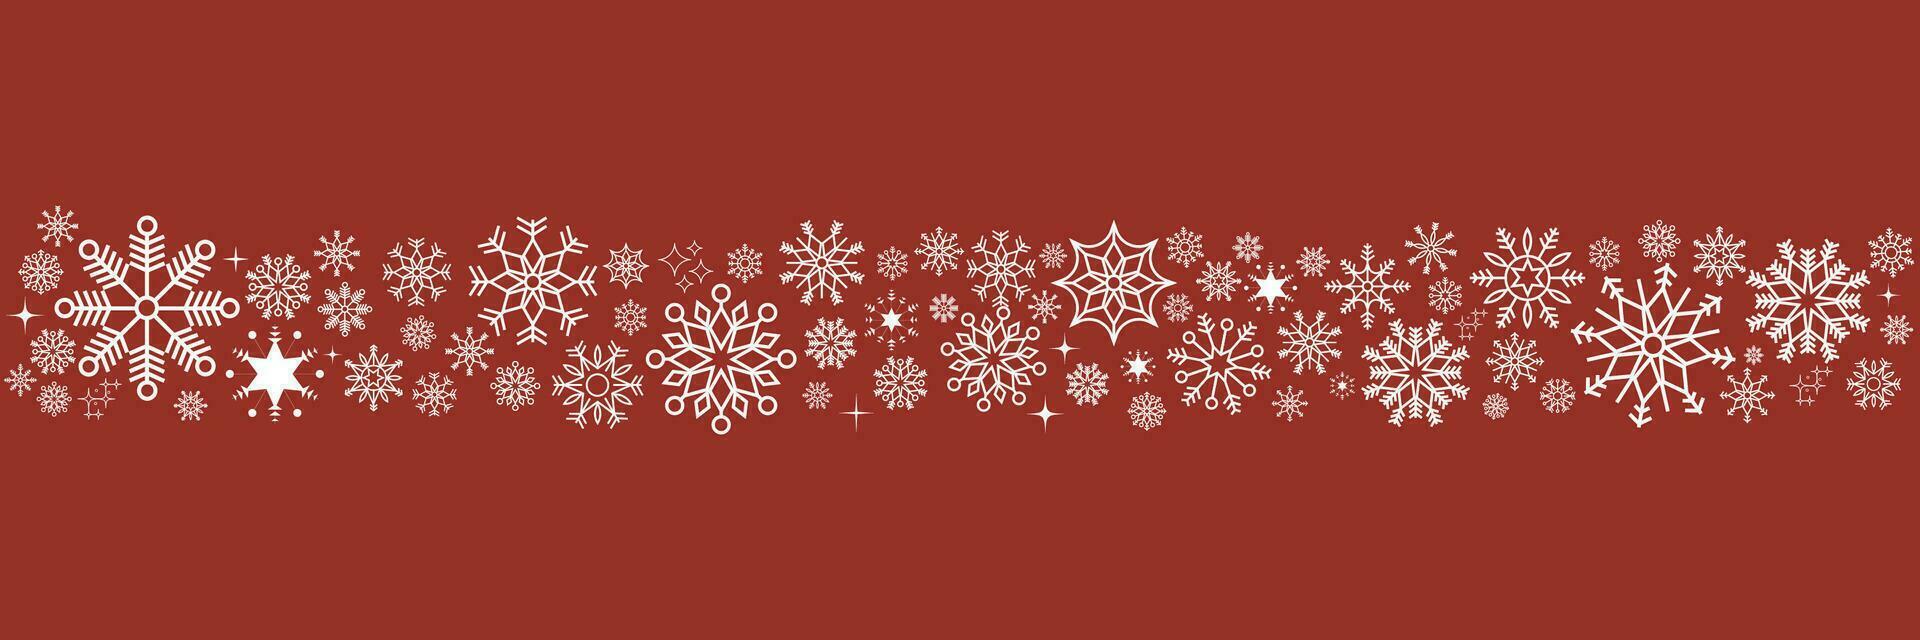 vinter- och jul bakgrund med snöflingor. vit och röd sömlös snöflinga gräns. jul bakgrund för hälsning kort. ny år och jul hälsning kort. vektor illustration.